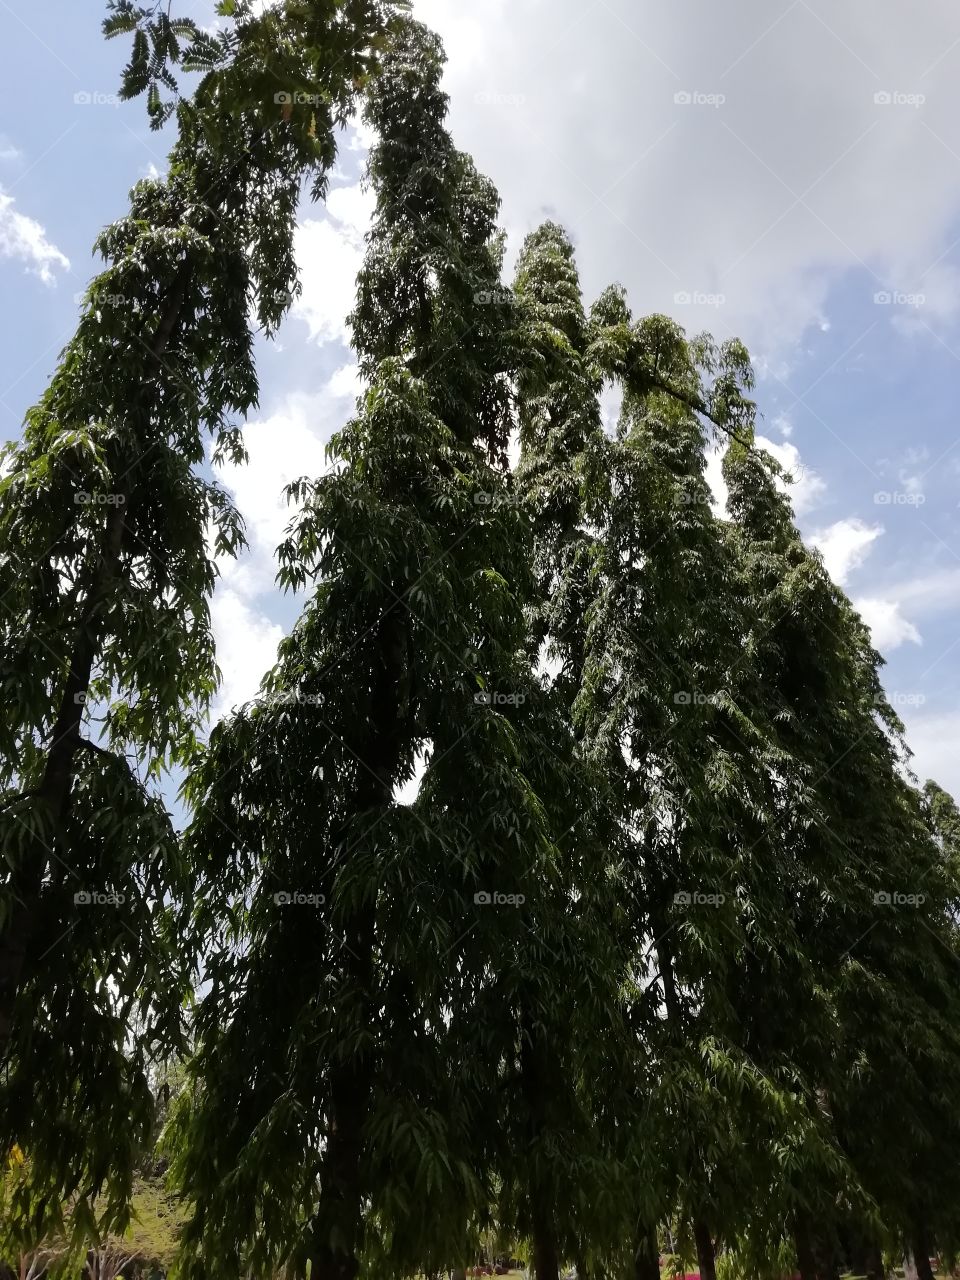 Random clicks # tall tree.. we call it cypress